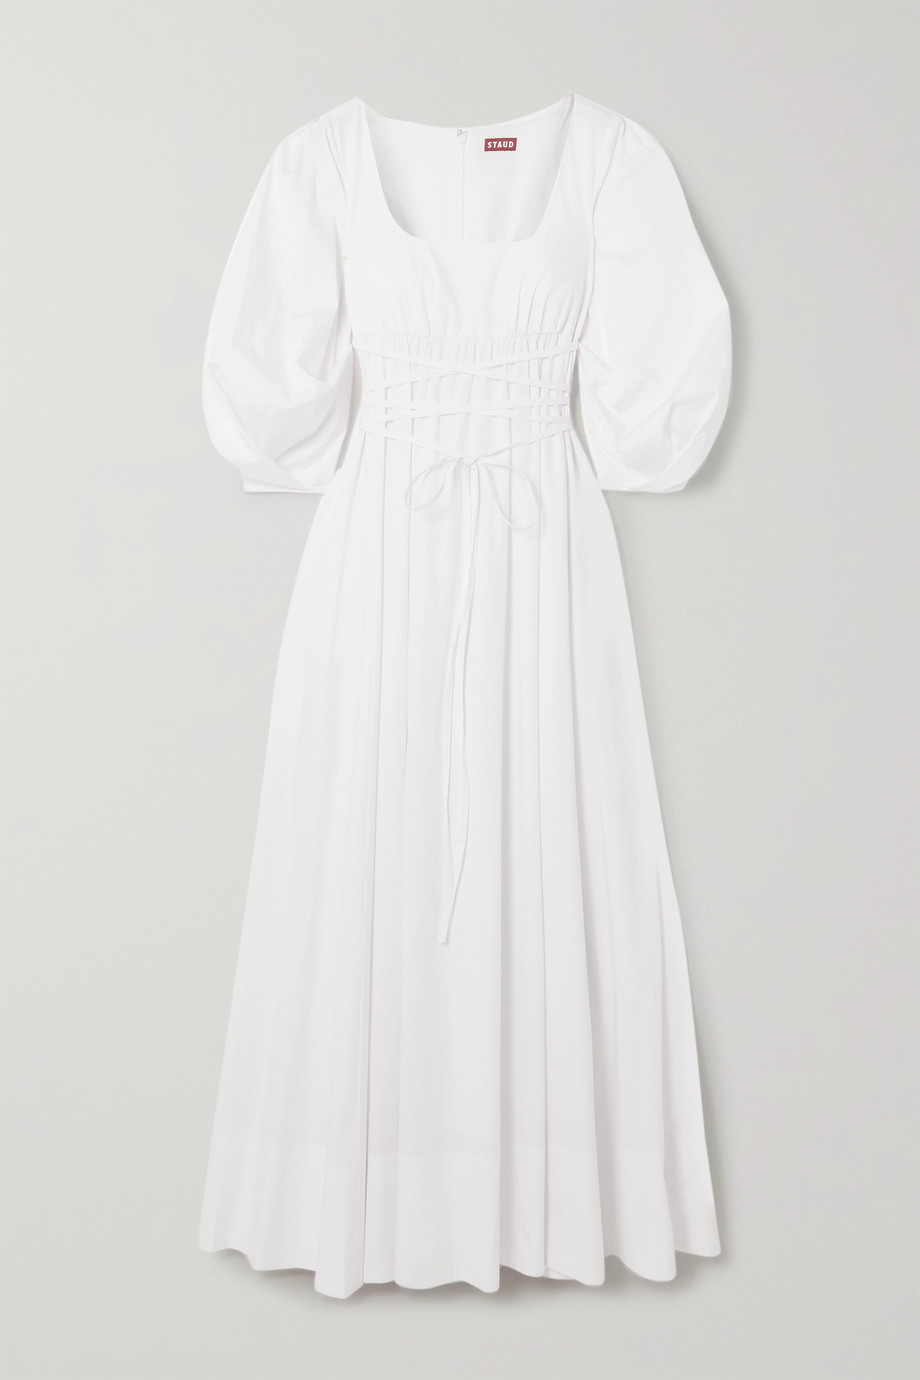 white summer dress uk